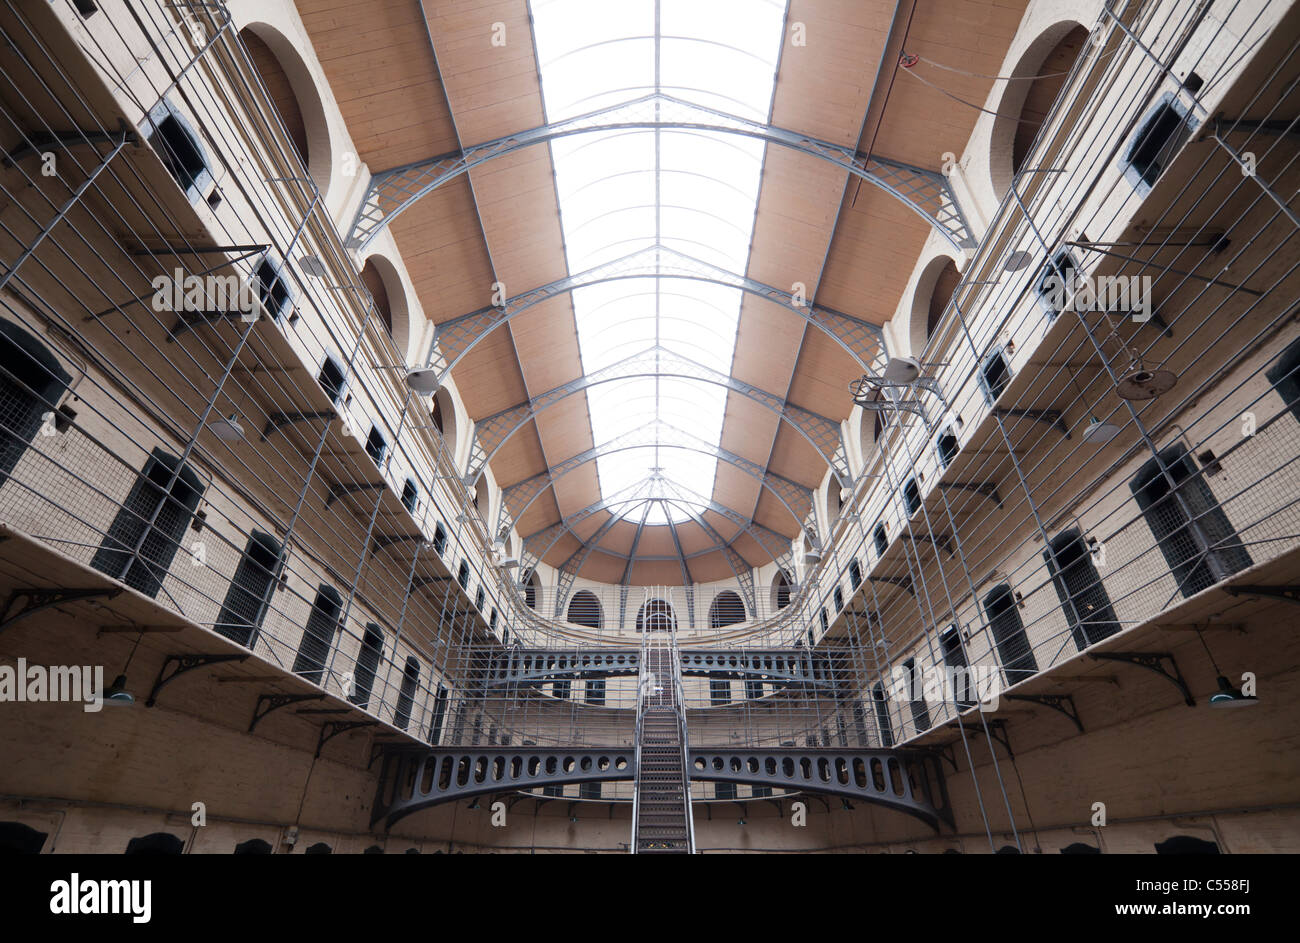 La prison de Kilmainham, Dublin, Irlande Banque D'Images